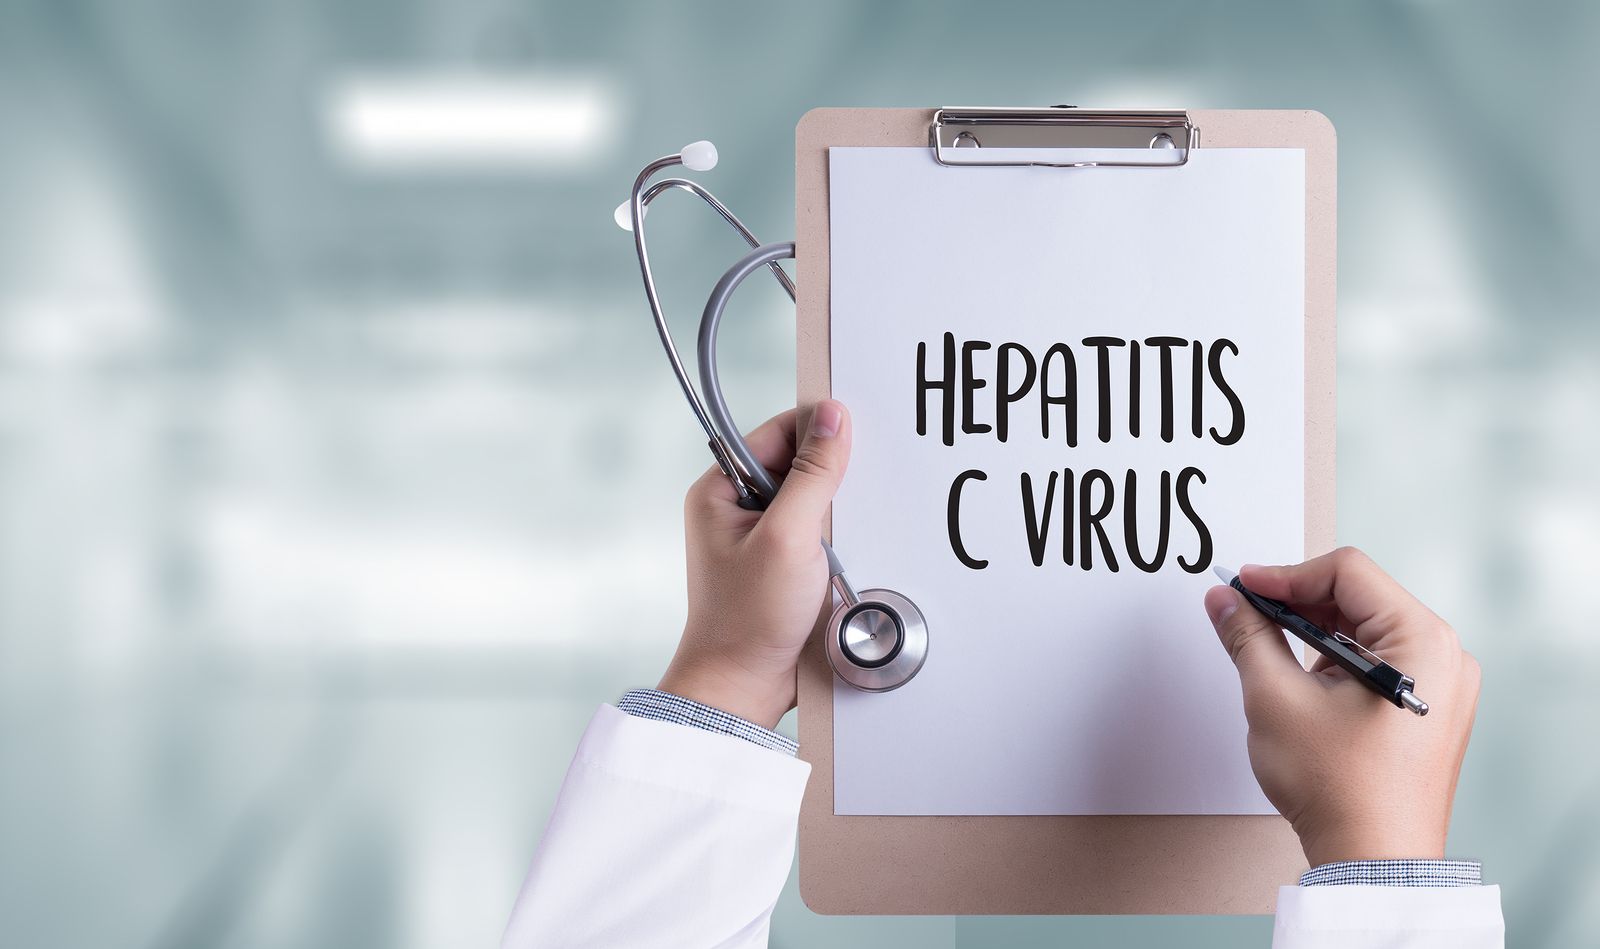 Los últimos datos de la hepatitis C en España: ¿cuál es la tendencia?